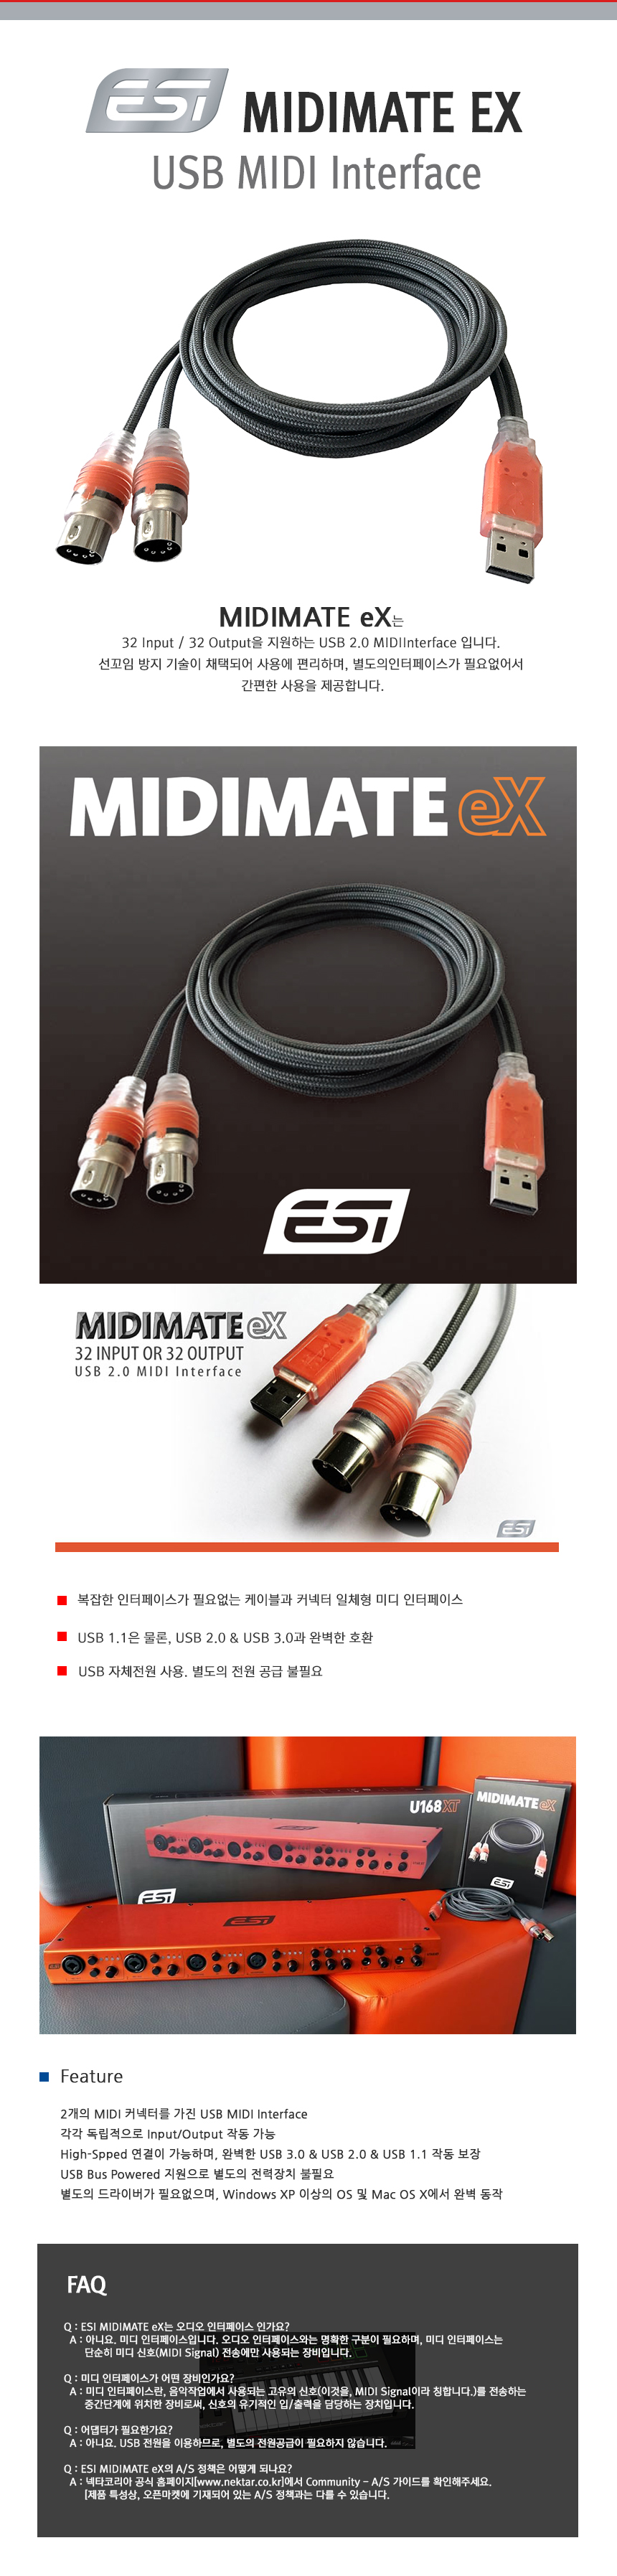 ESI Midimate EX Midi USB Kabel Cable